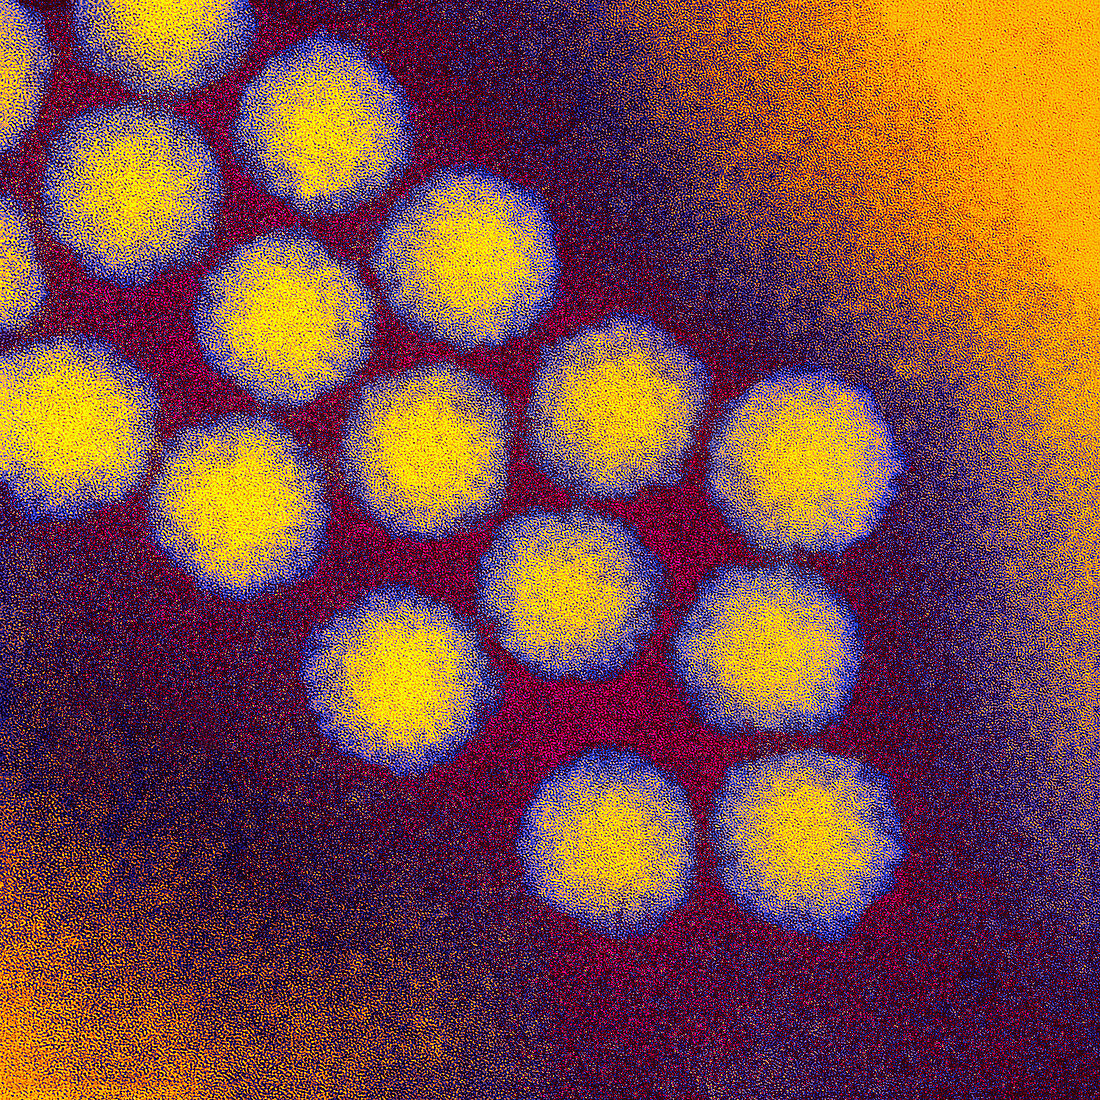 Poliovirus particles,TEM